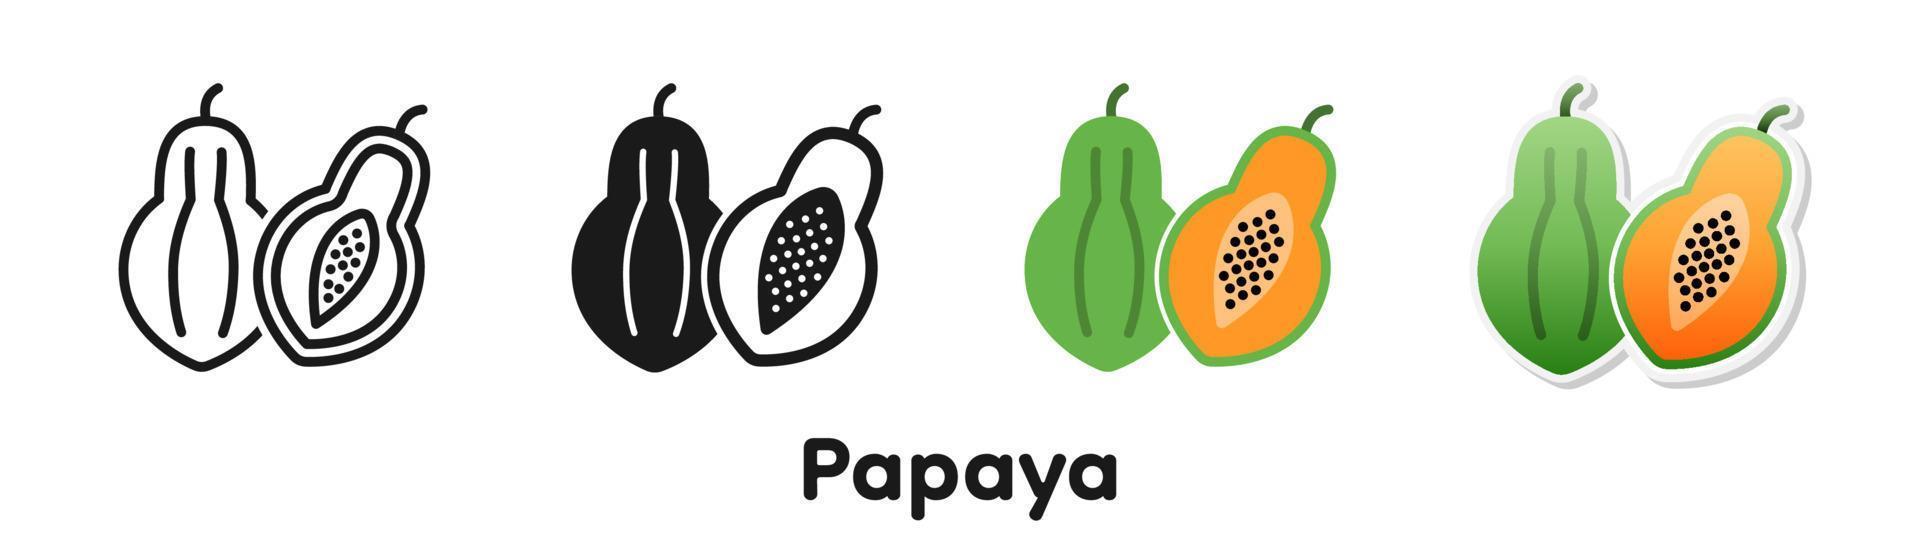 conjunto de iconos vectoriales de papaya. vector